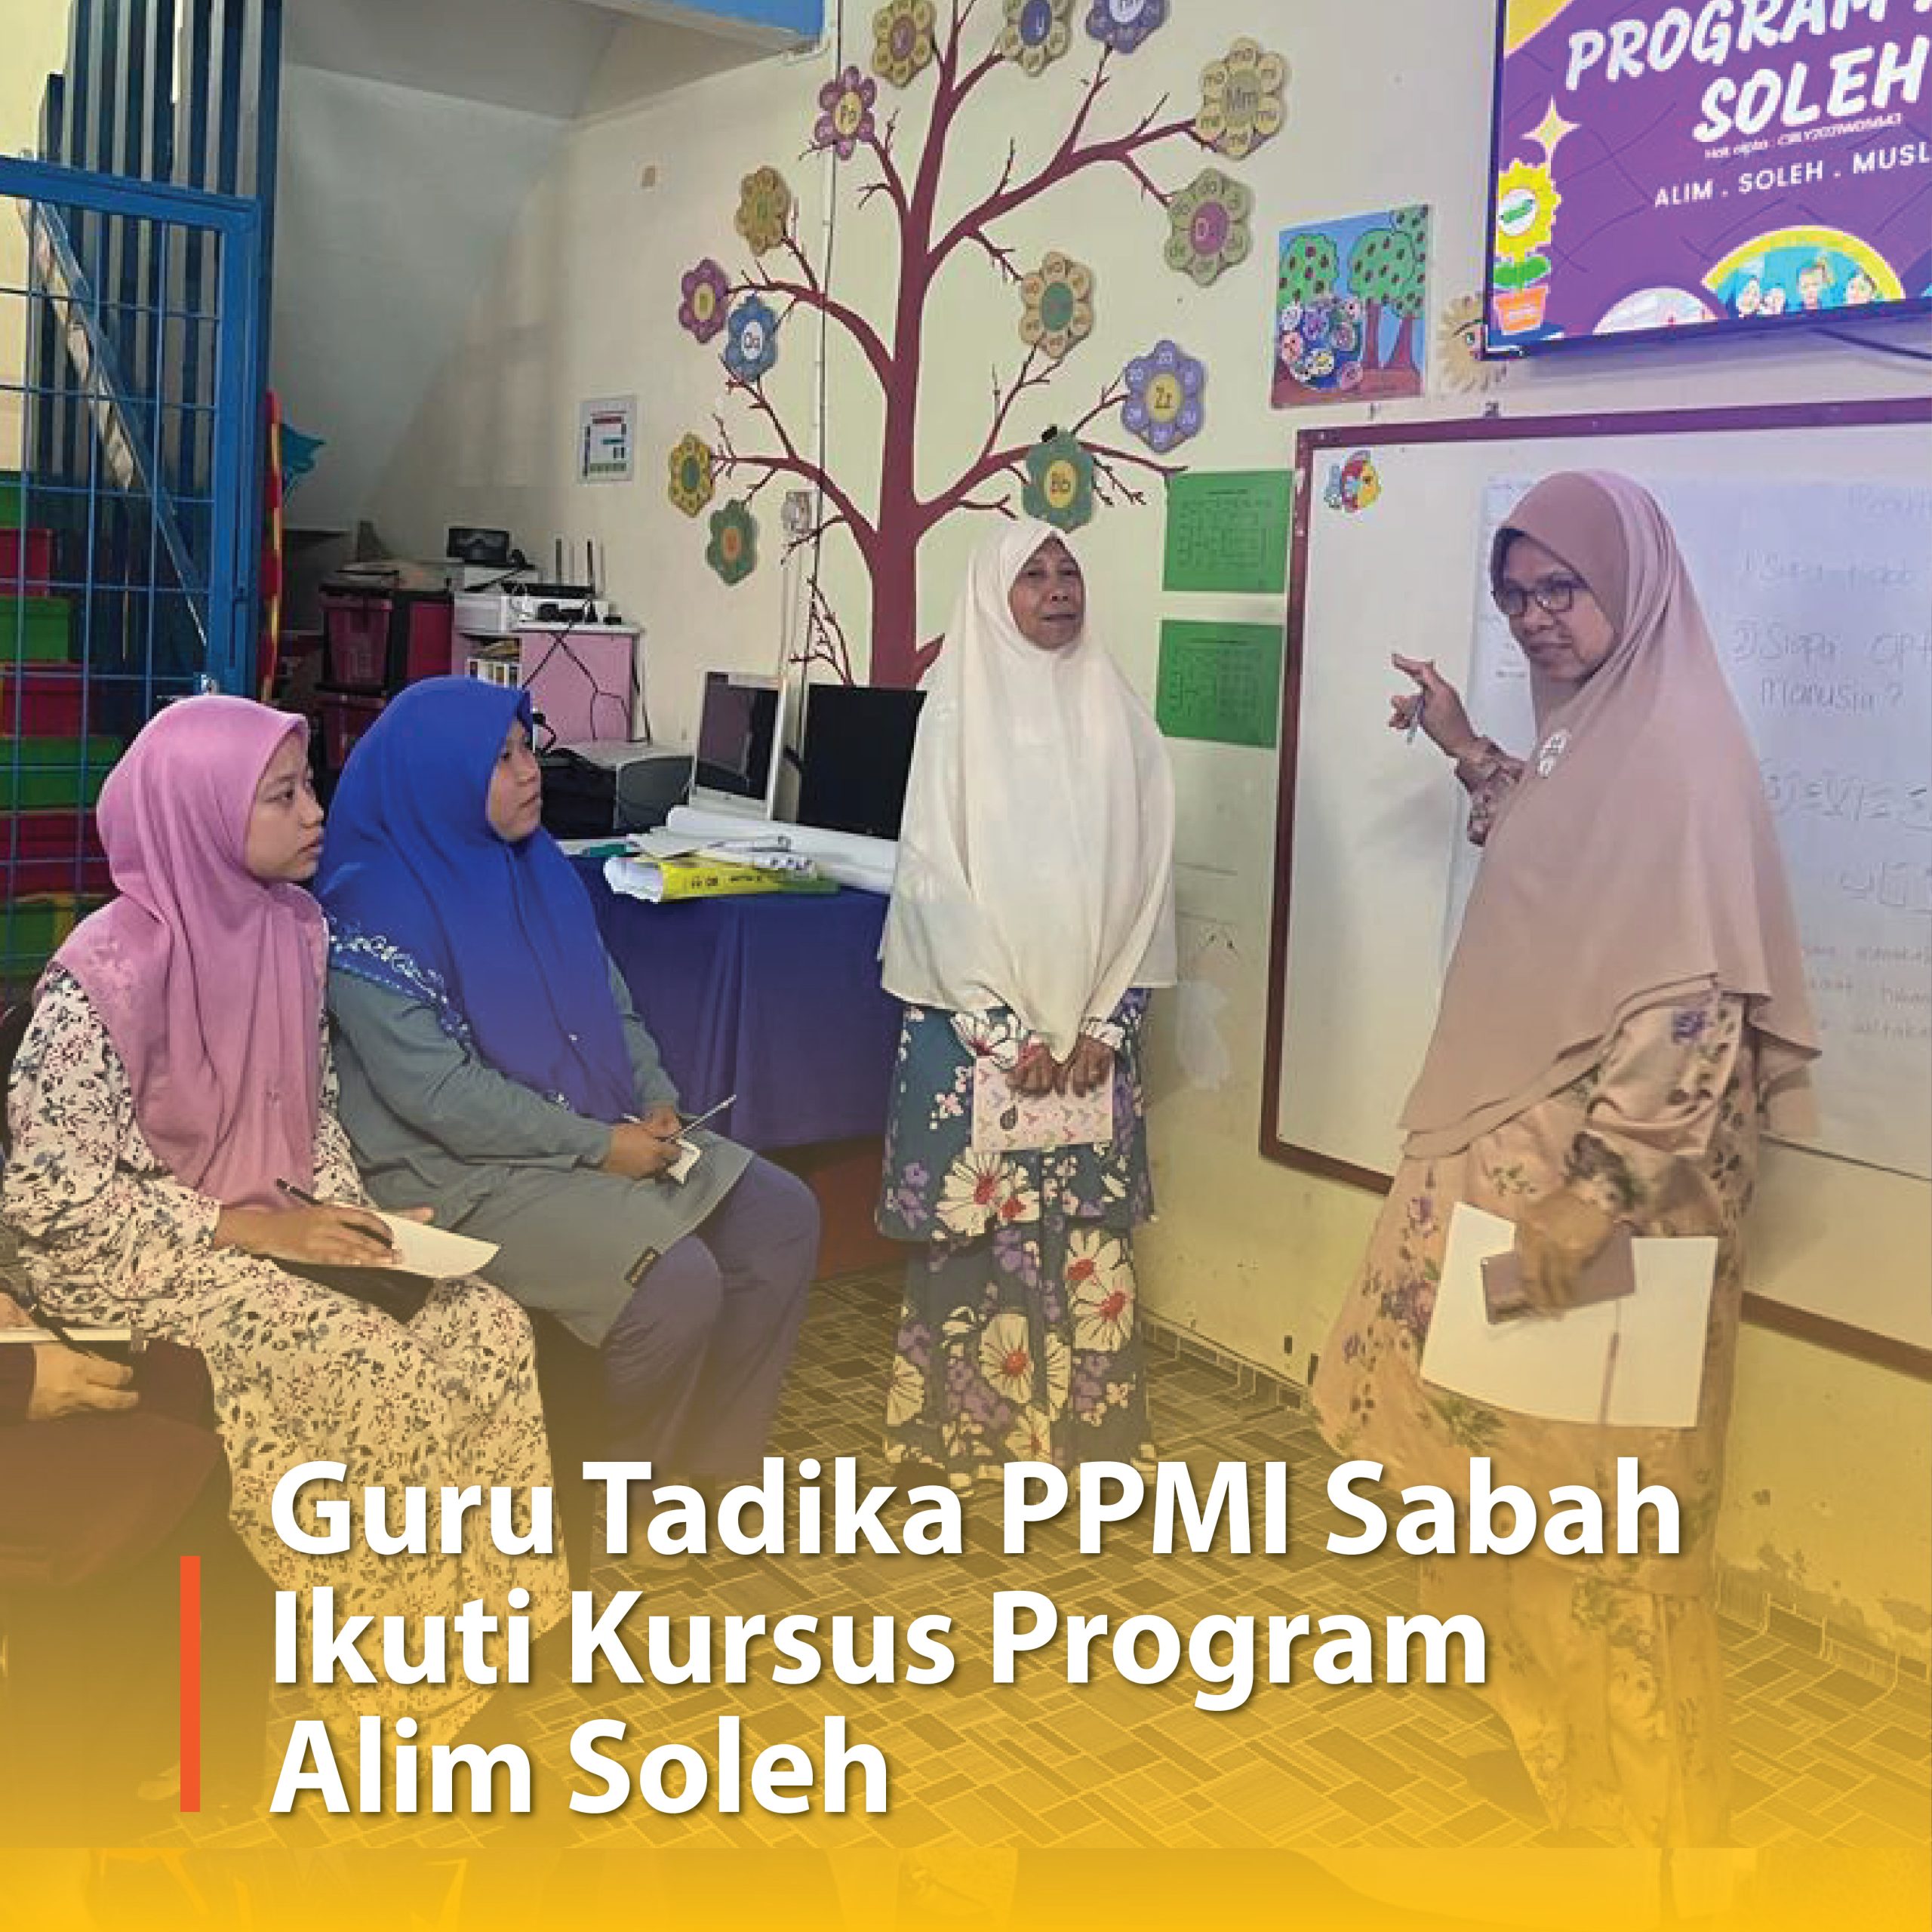 Guru Tadika PPMI Sabah Ikuti Kursus Program Alim Soleh